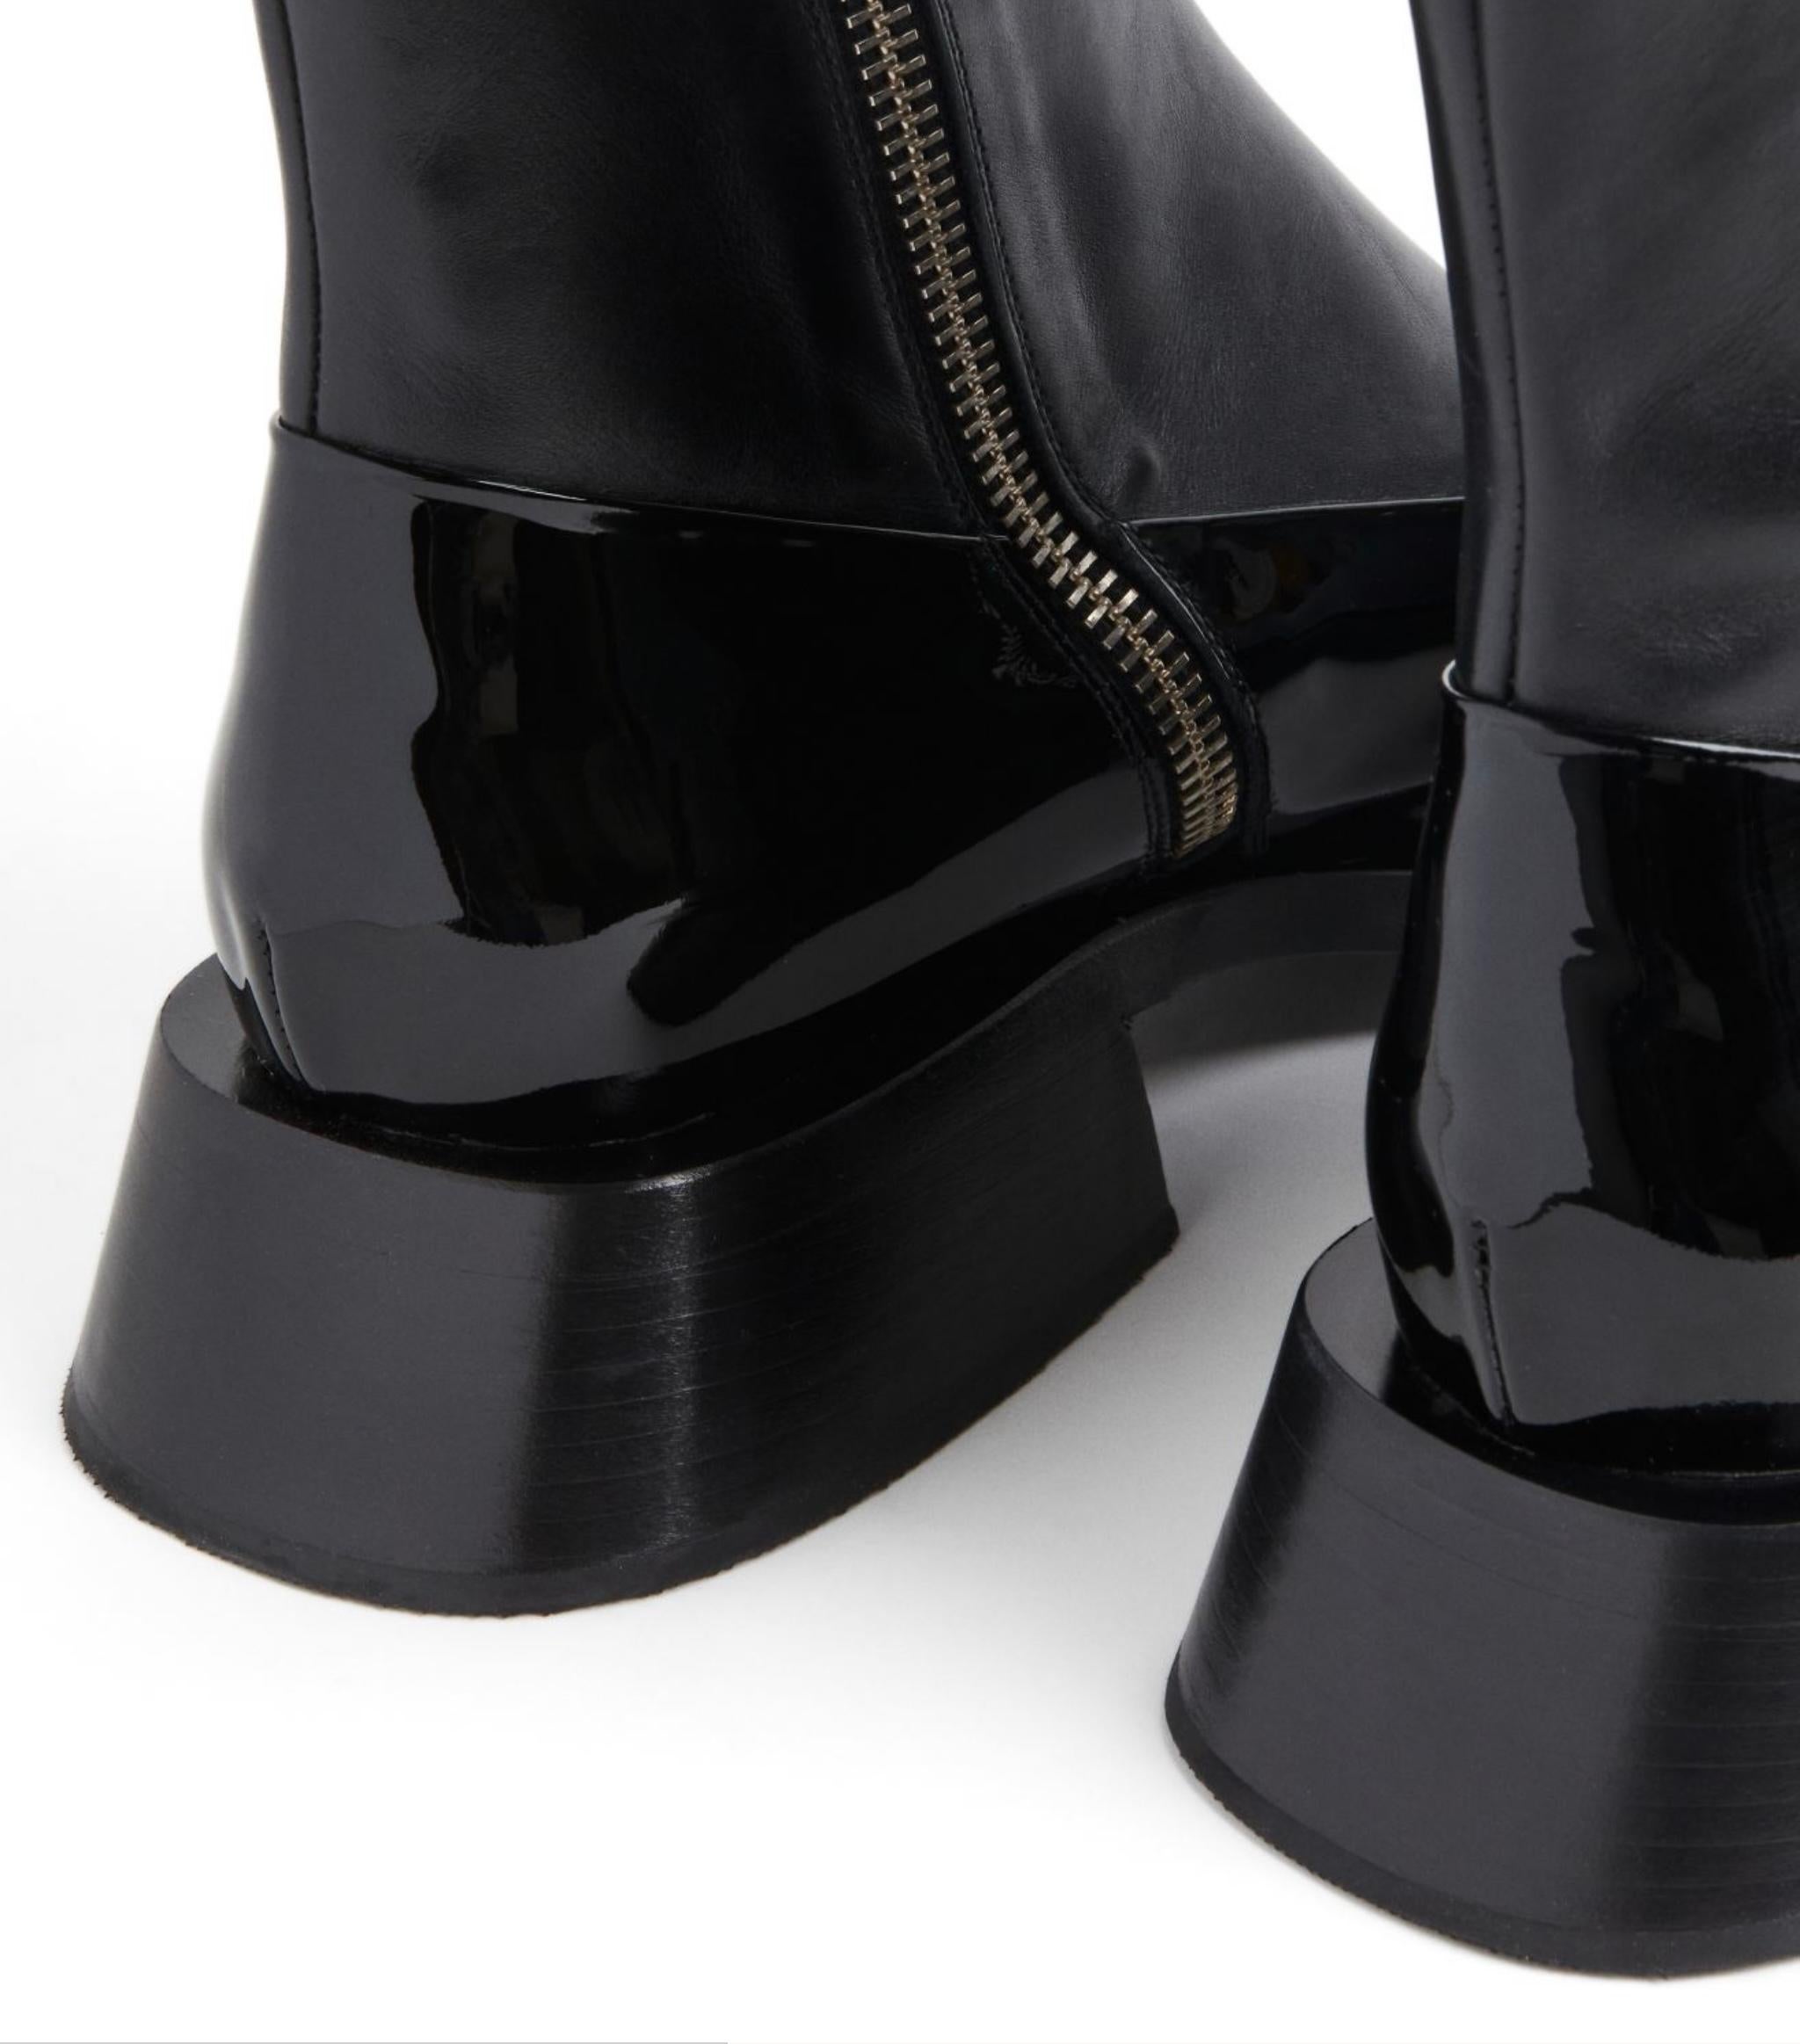 Black Mugler H&M Leather ankle boots black size US 8.5 EUR 41 UK 7.5 Limited Edition For Sale